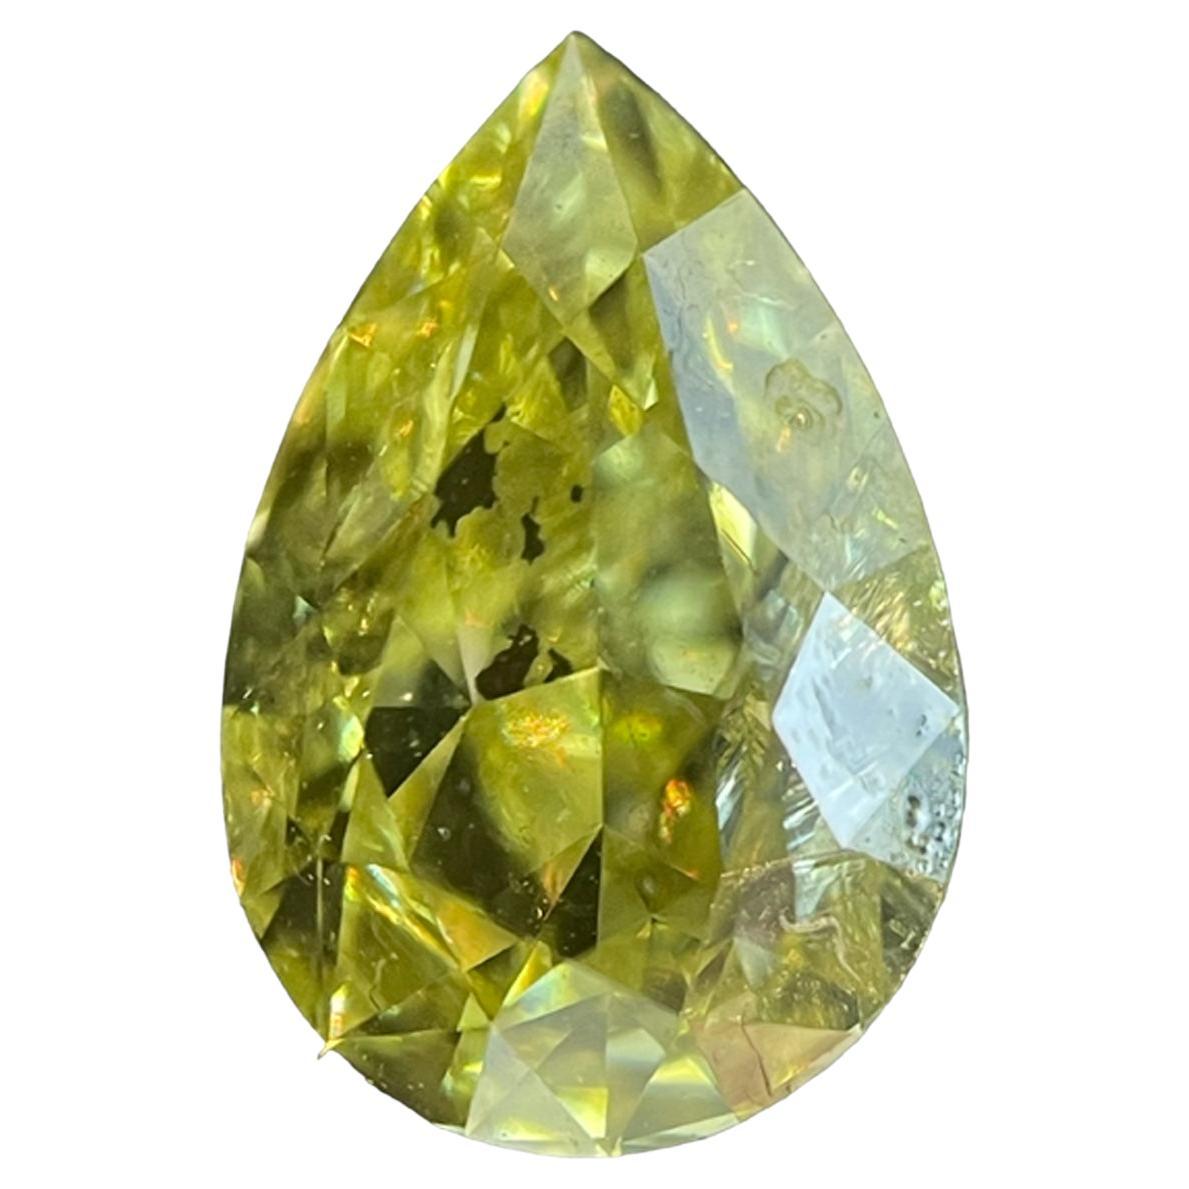 Diamant naturel jaune intense fantaisie en forme de poire de 1,43 carat de pureté Si2, certifié GIA